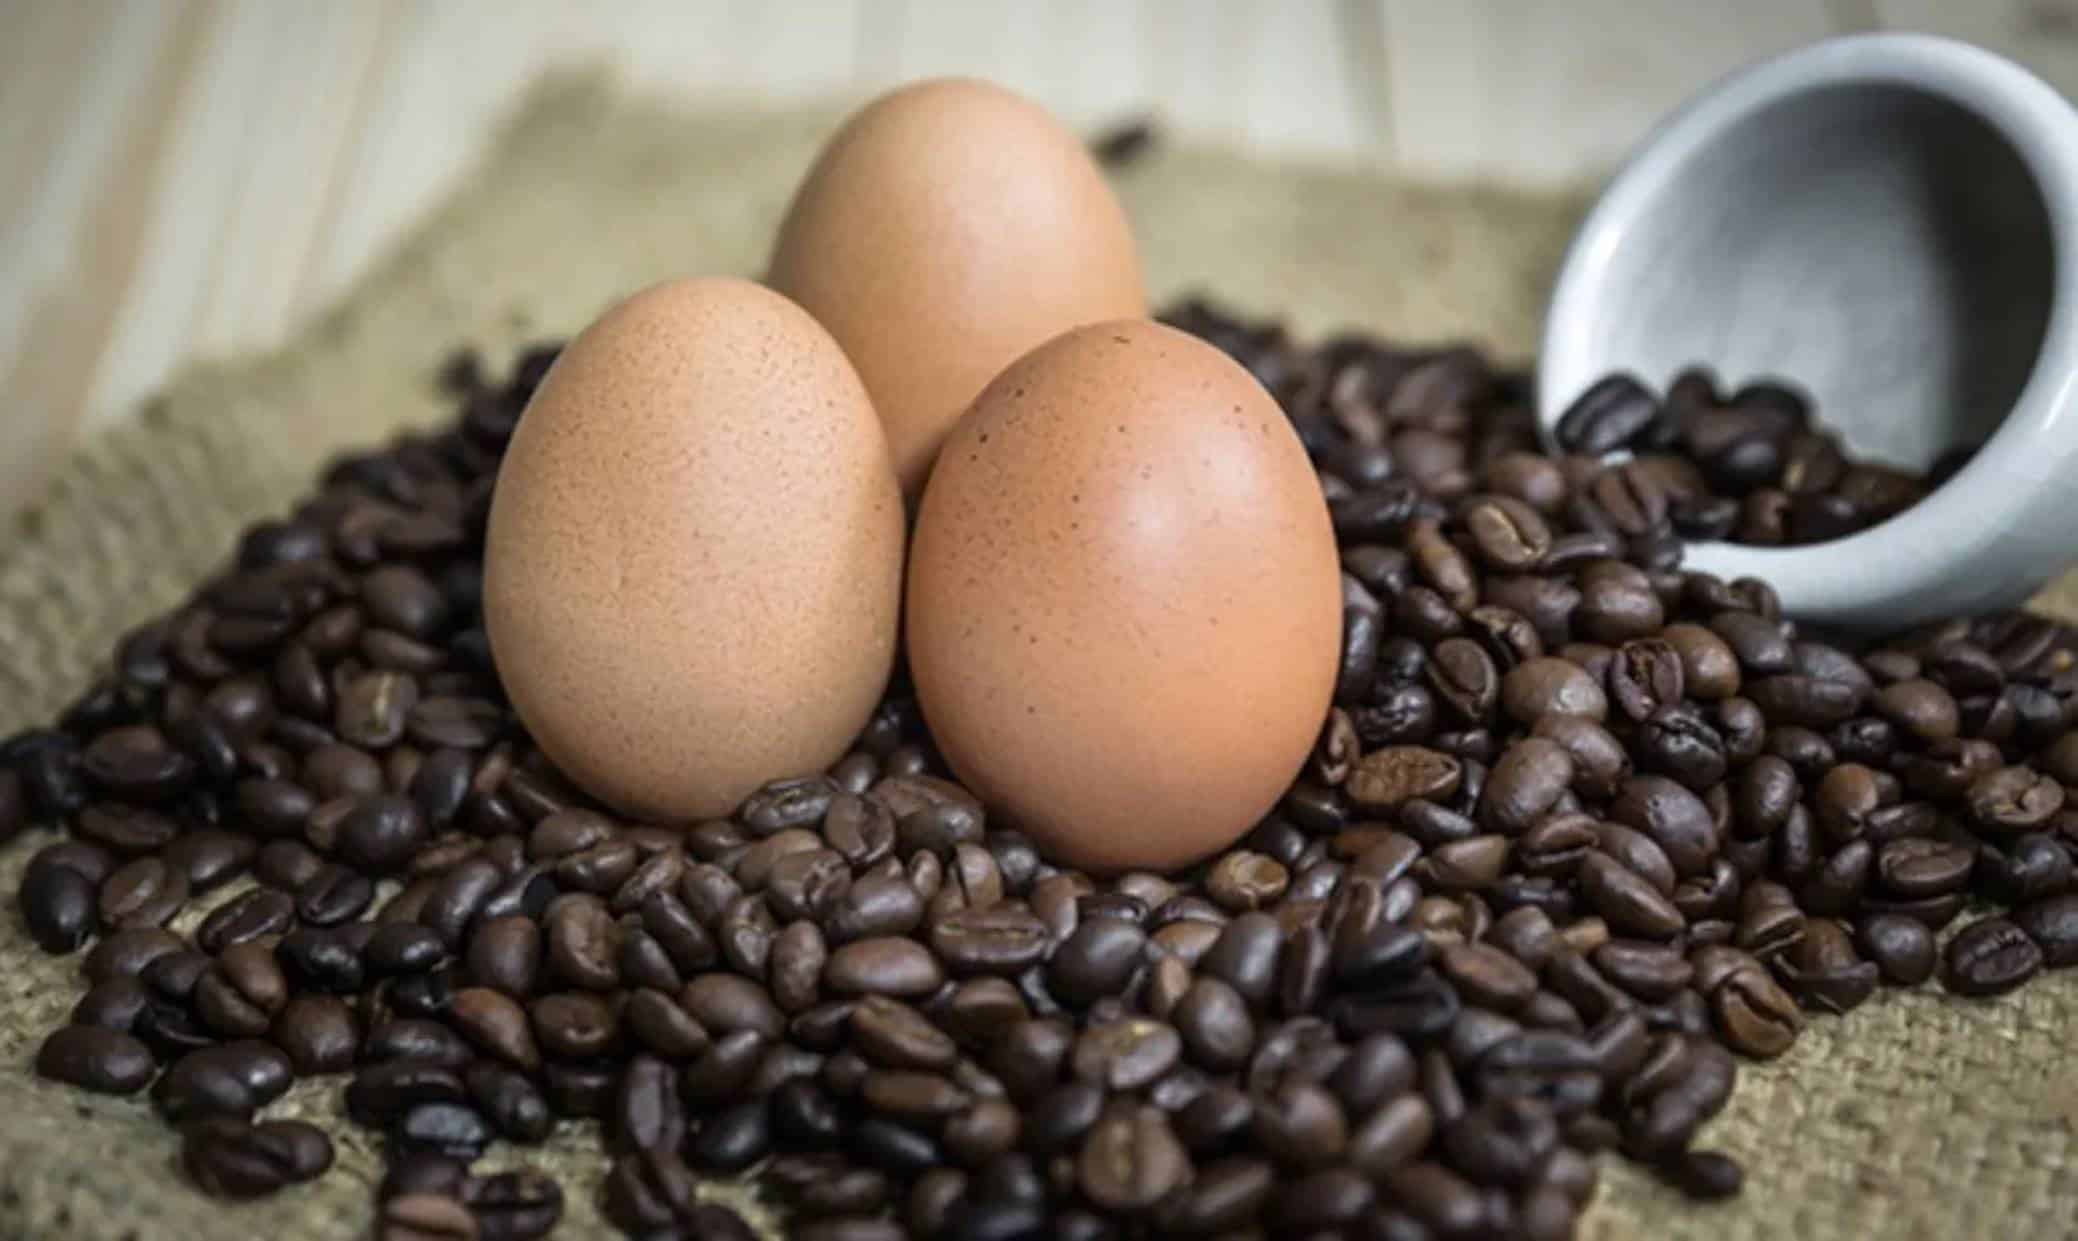 Descubra como melhorar o sabor do café com a casca dos ovos, não jogue fora!